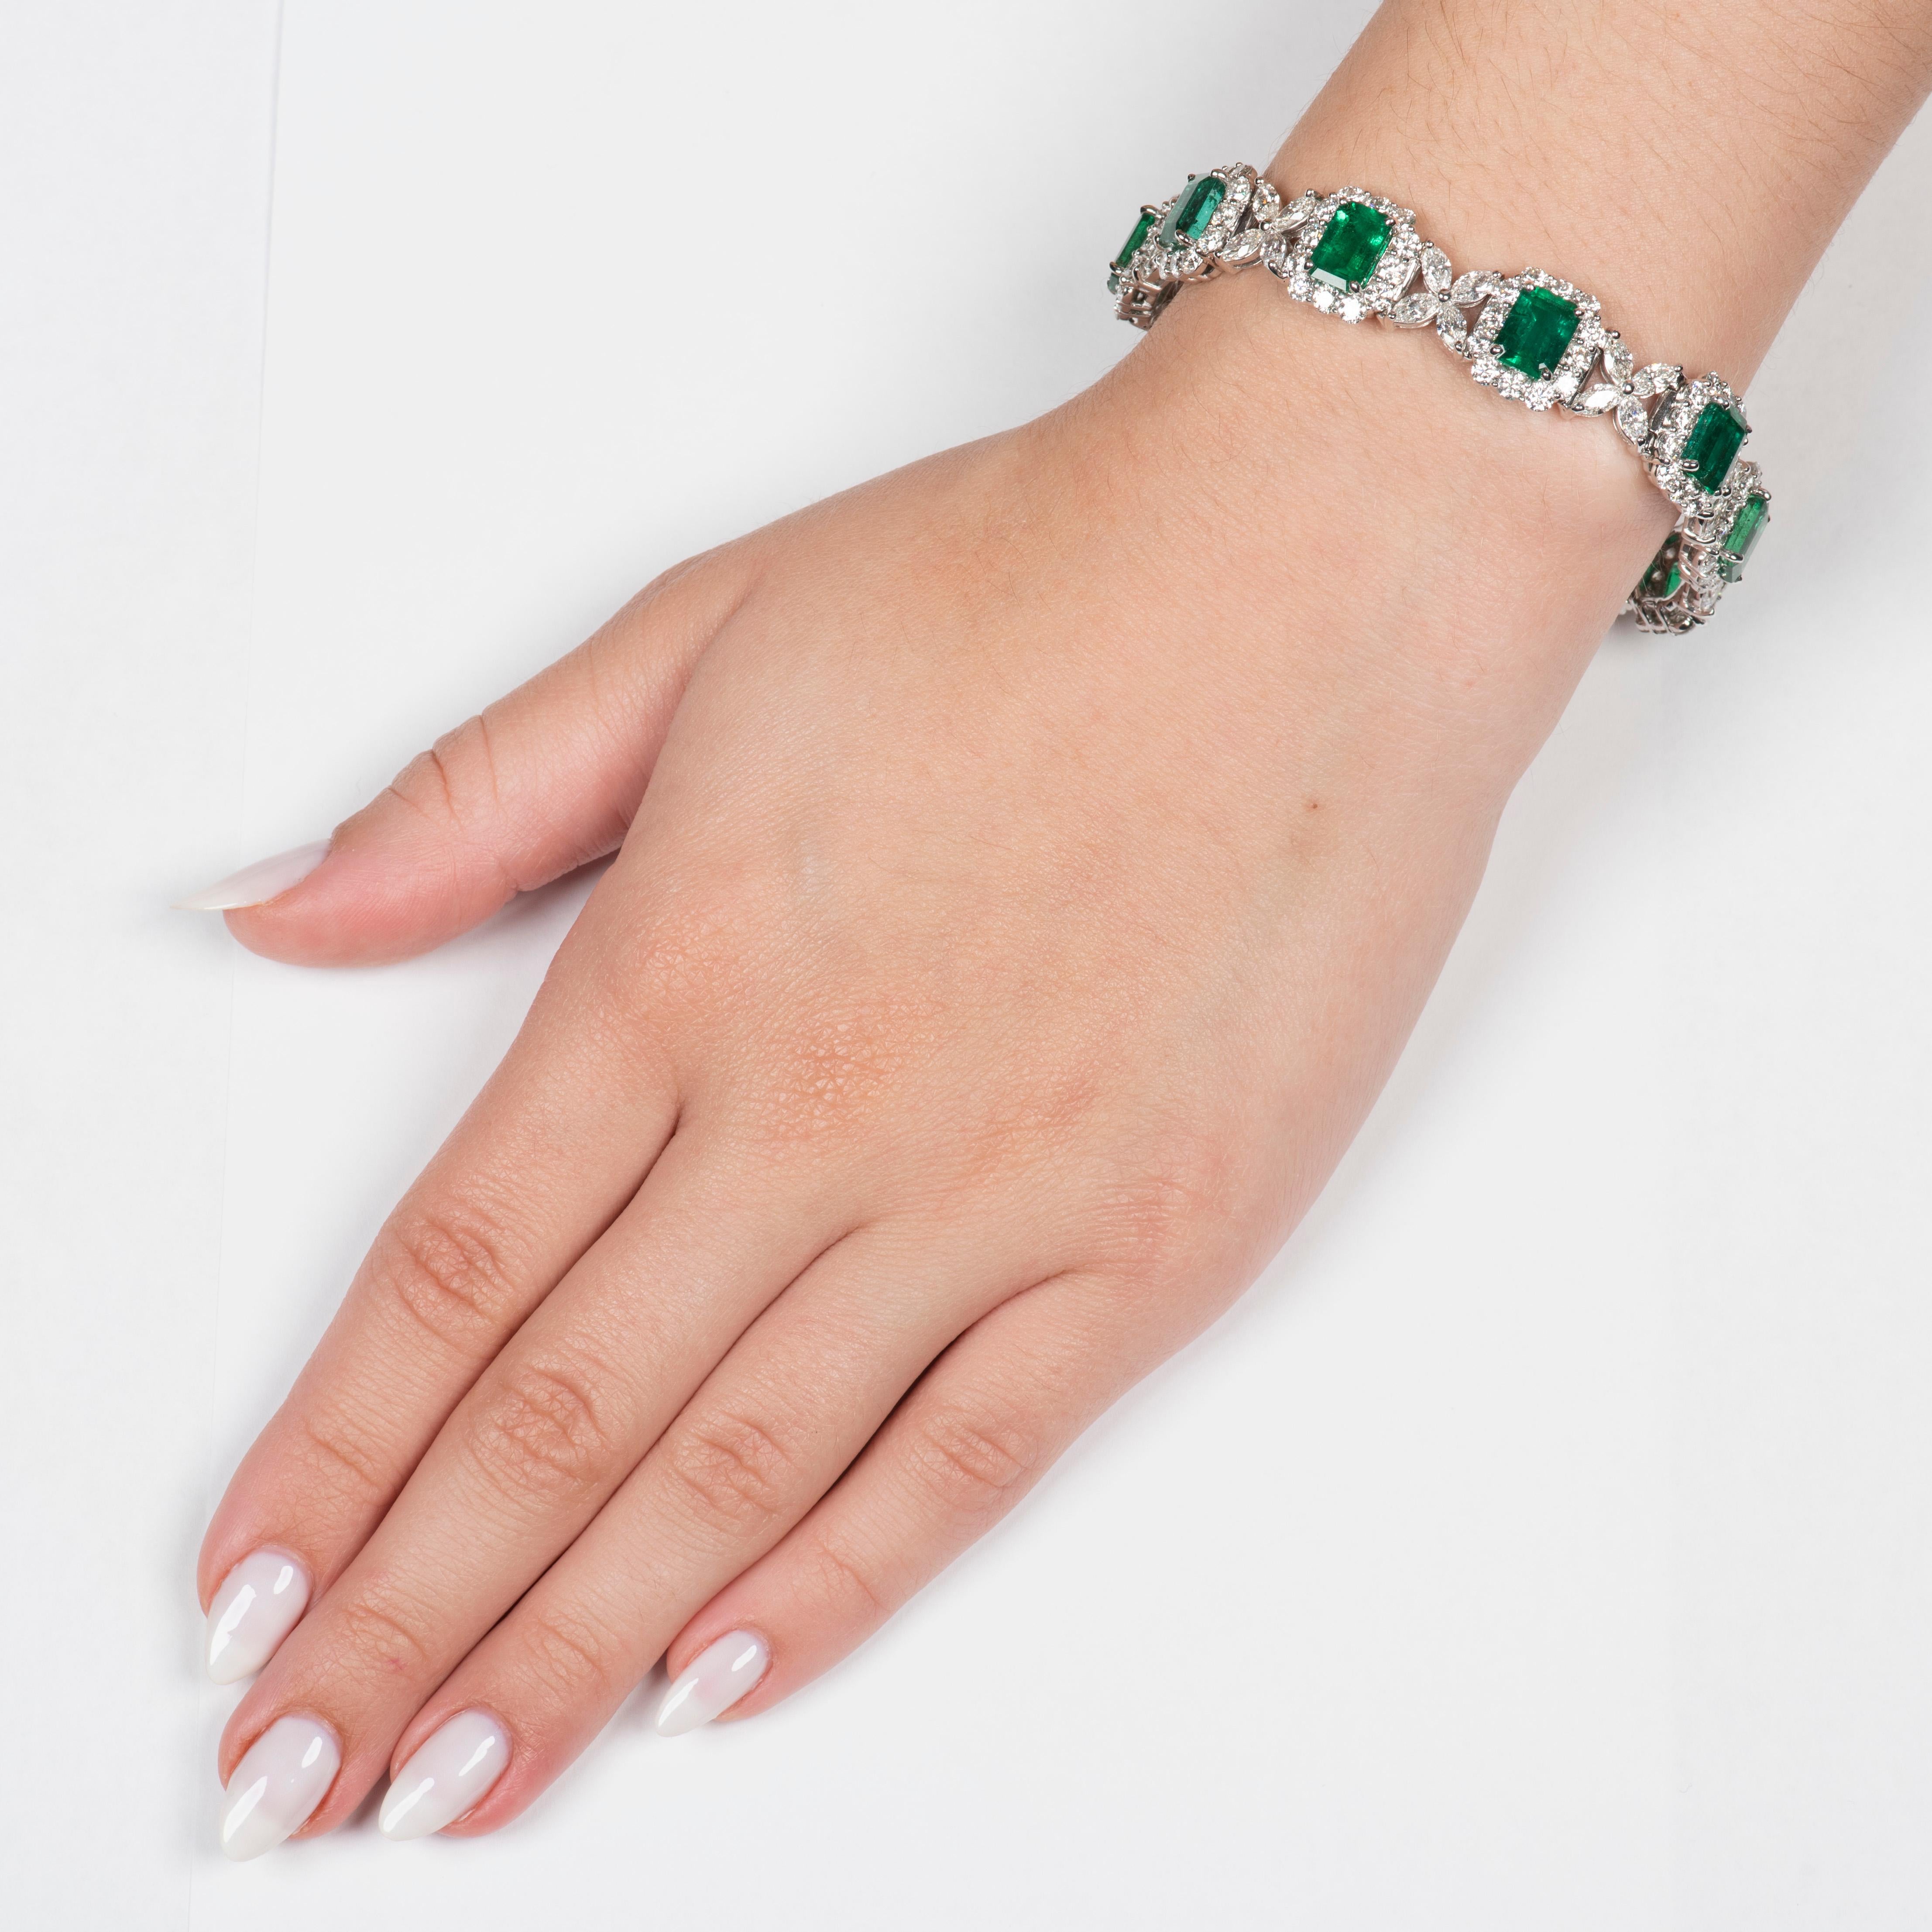 Dieses unglaubliche Armband besteht aus 15,44 ct natürlichen Smaragden im Smaragdschliff (insgesamt 10) und 8,45 ct Diamanten, die alle in 18kt Weißgold gefasst sind. Die Smaragde haben eine reiche, lebhafte, mittelgrüne Sättigung und sind sehr hell